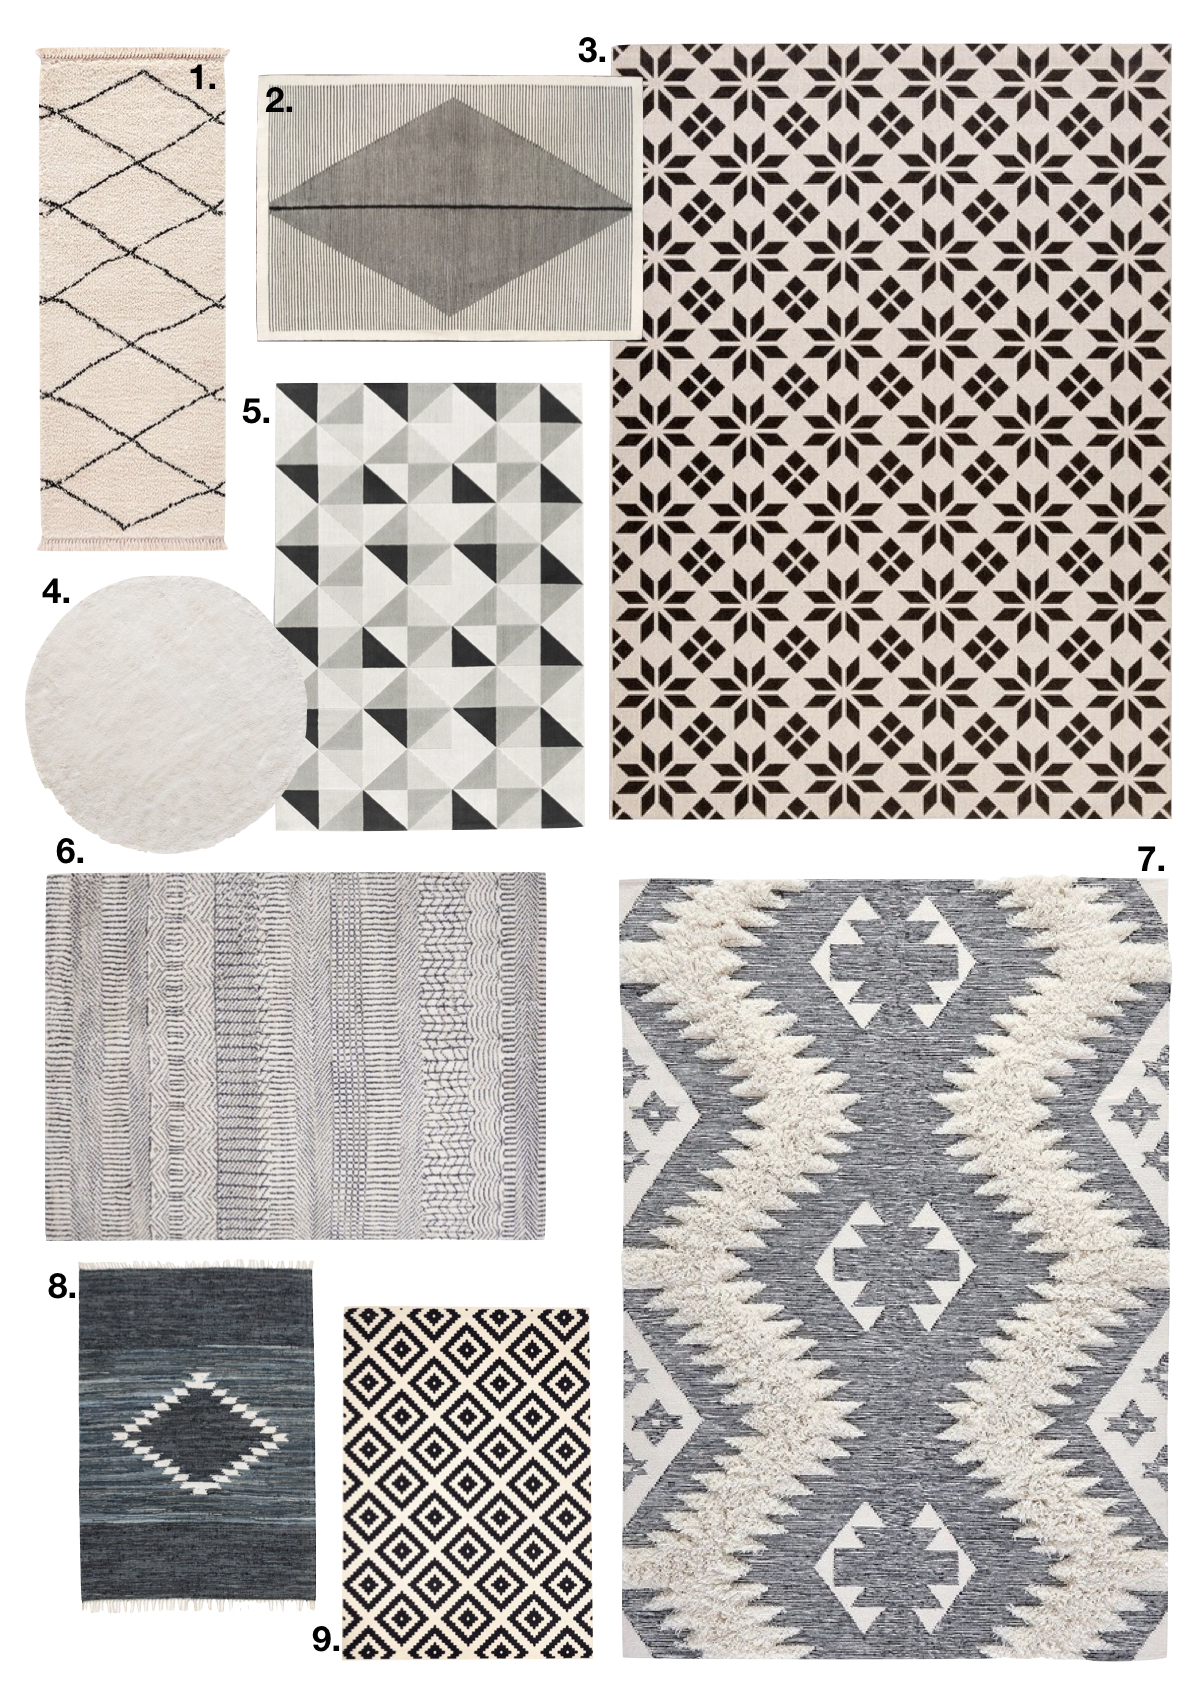 comment fixer un tapis au mur scandinave géometrique - blog déco - clem around the corner